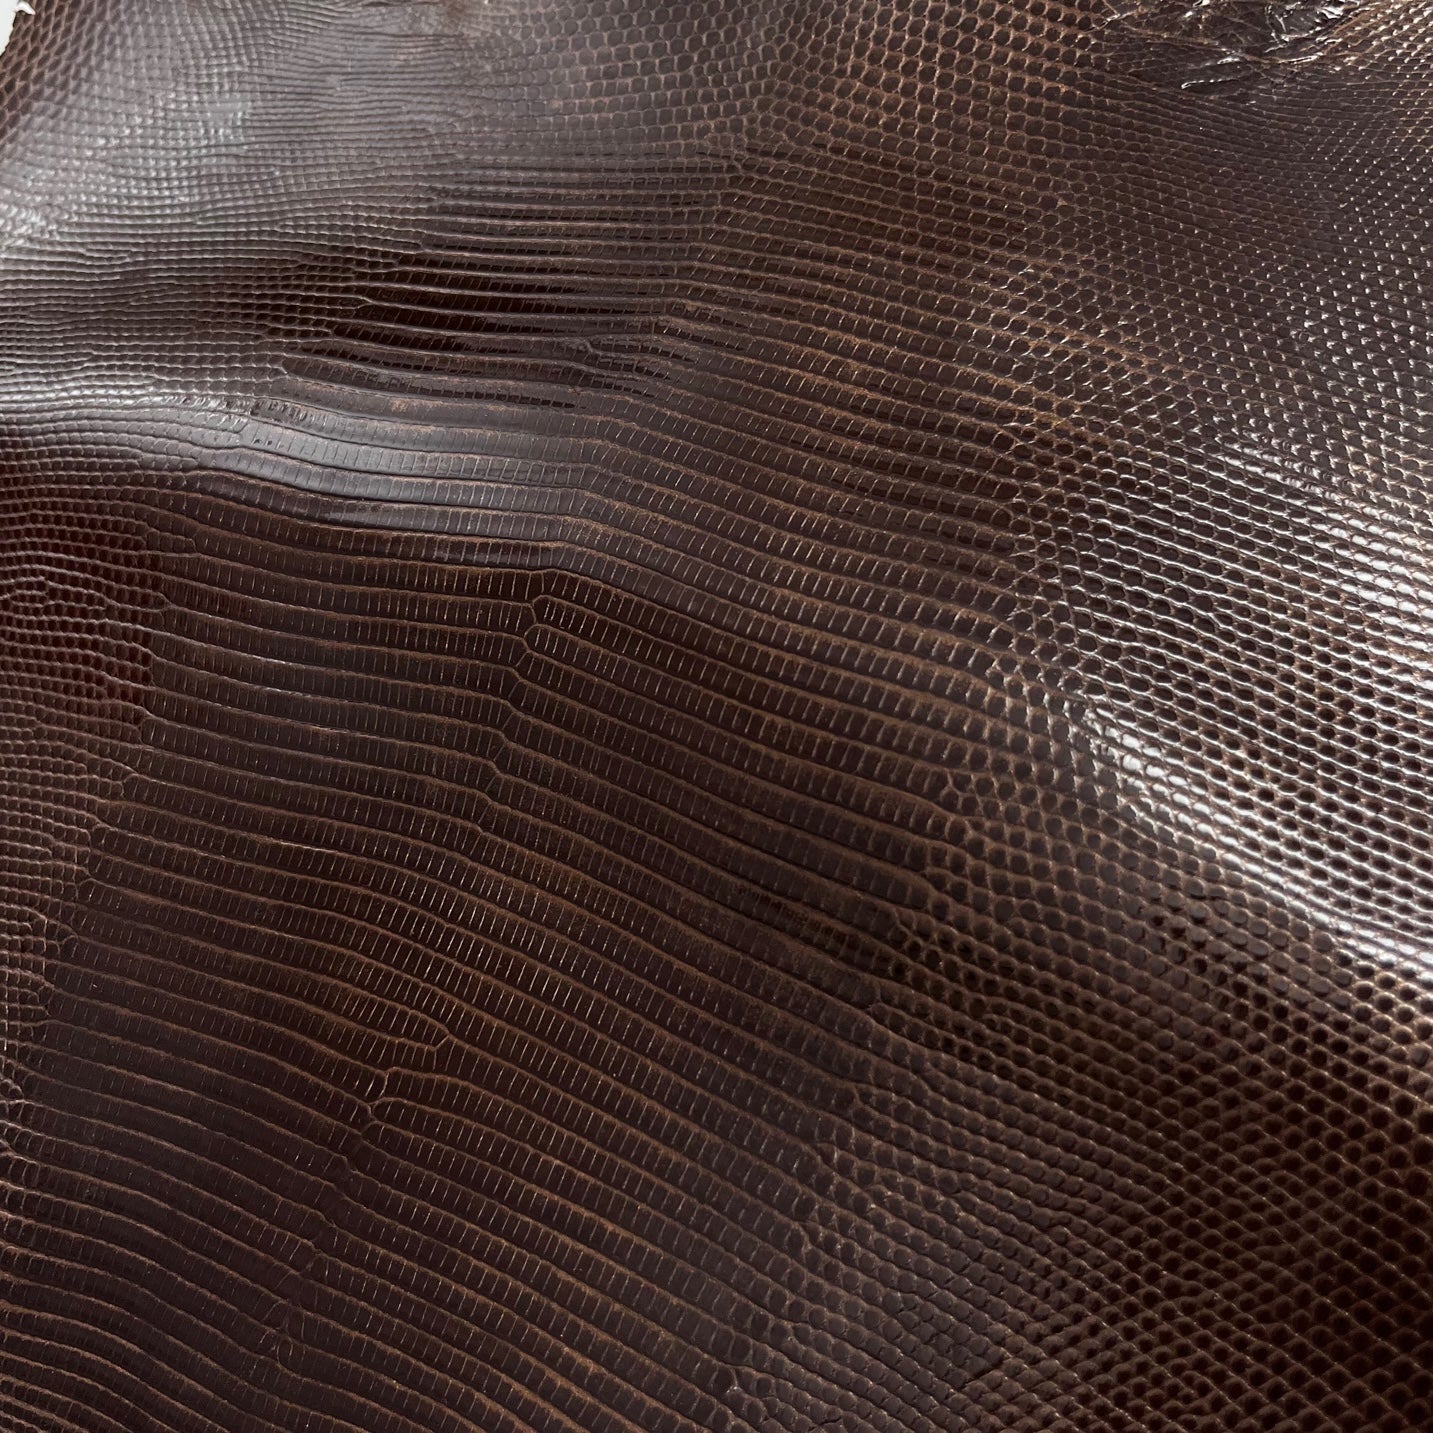 Lizard Skin | Chocolate Bronze (Back Cut)